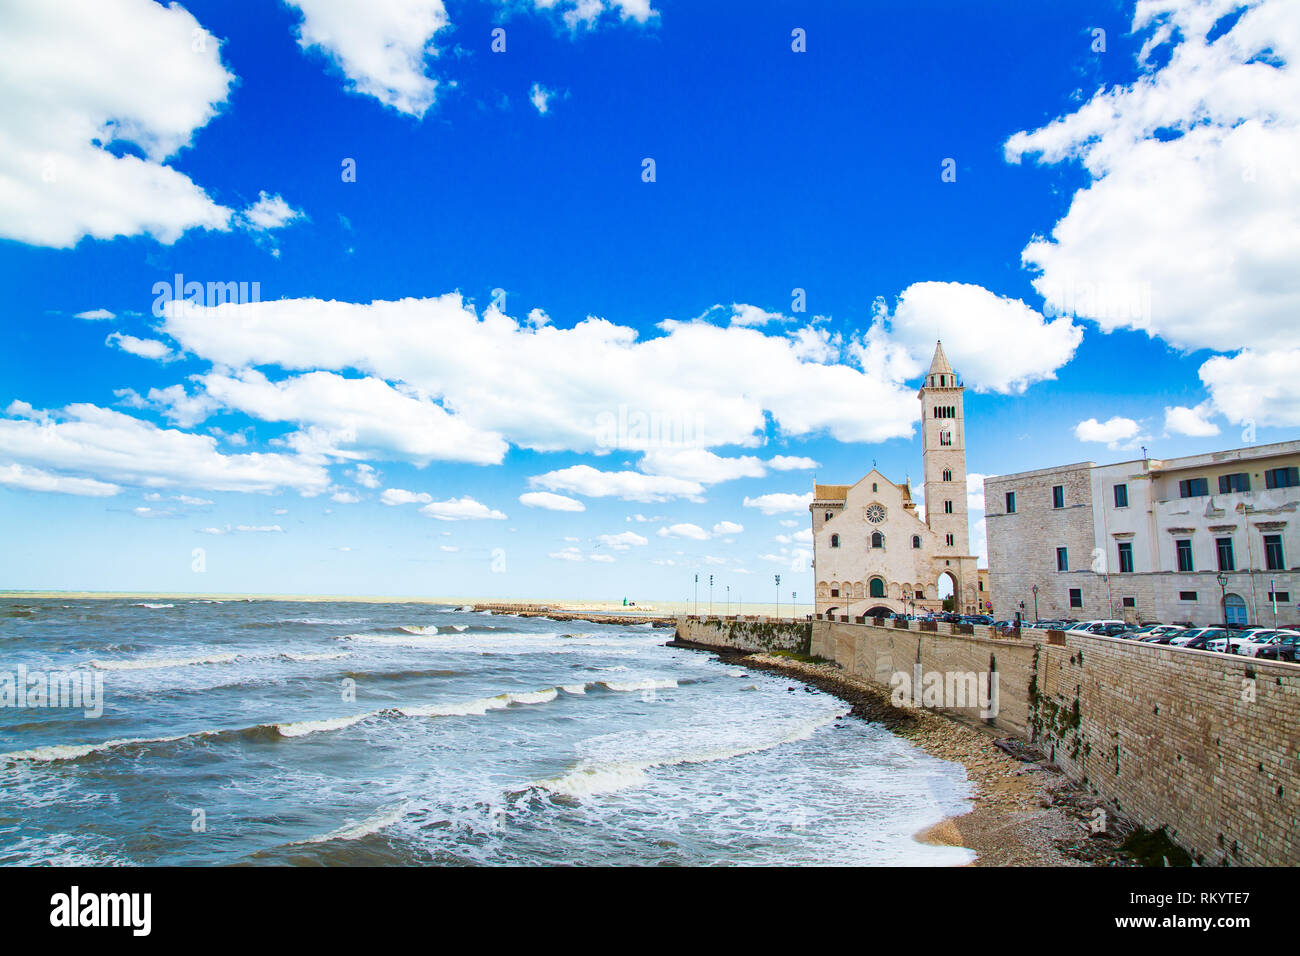 Costa e cattedra nella città di Trani, Provincia Bari, Regione Puglia, Italia Foto Stock